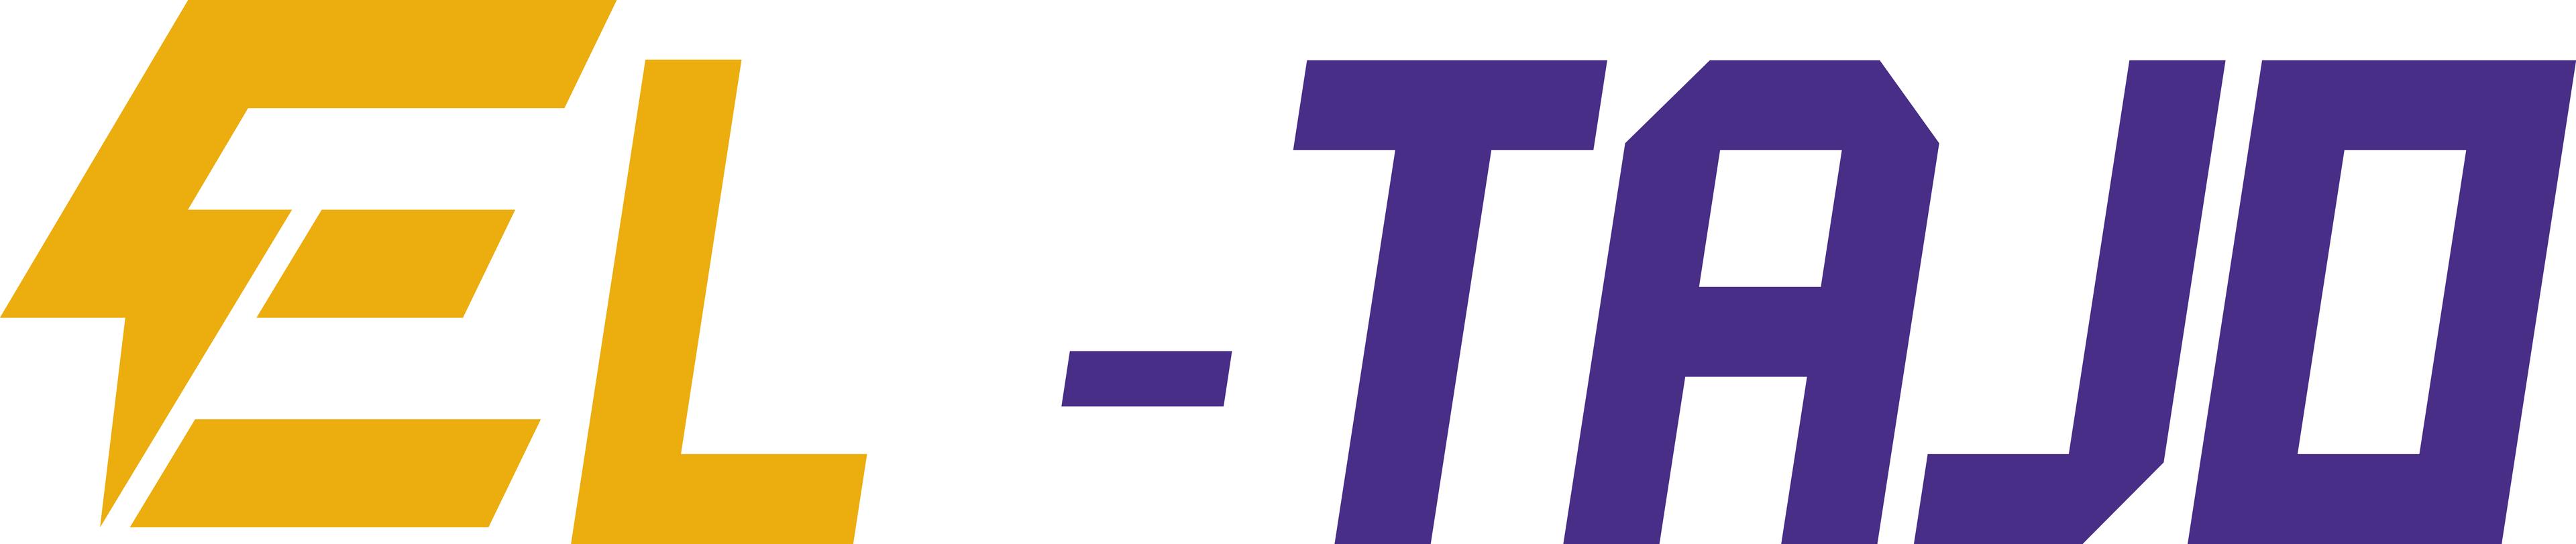 EL-Tajo Przemysław Tajkowski-logo